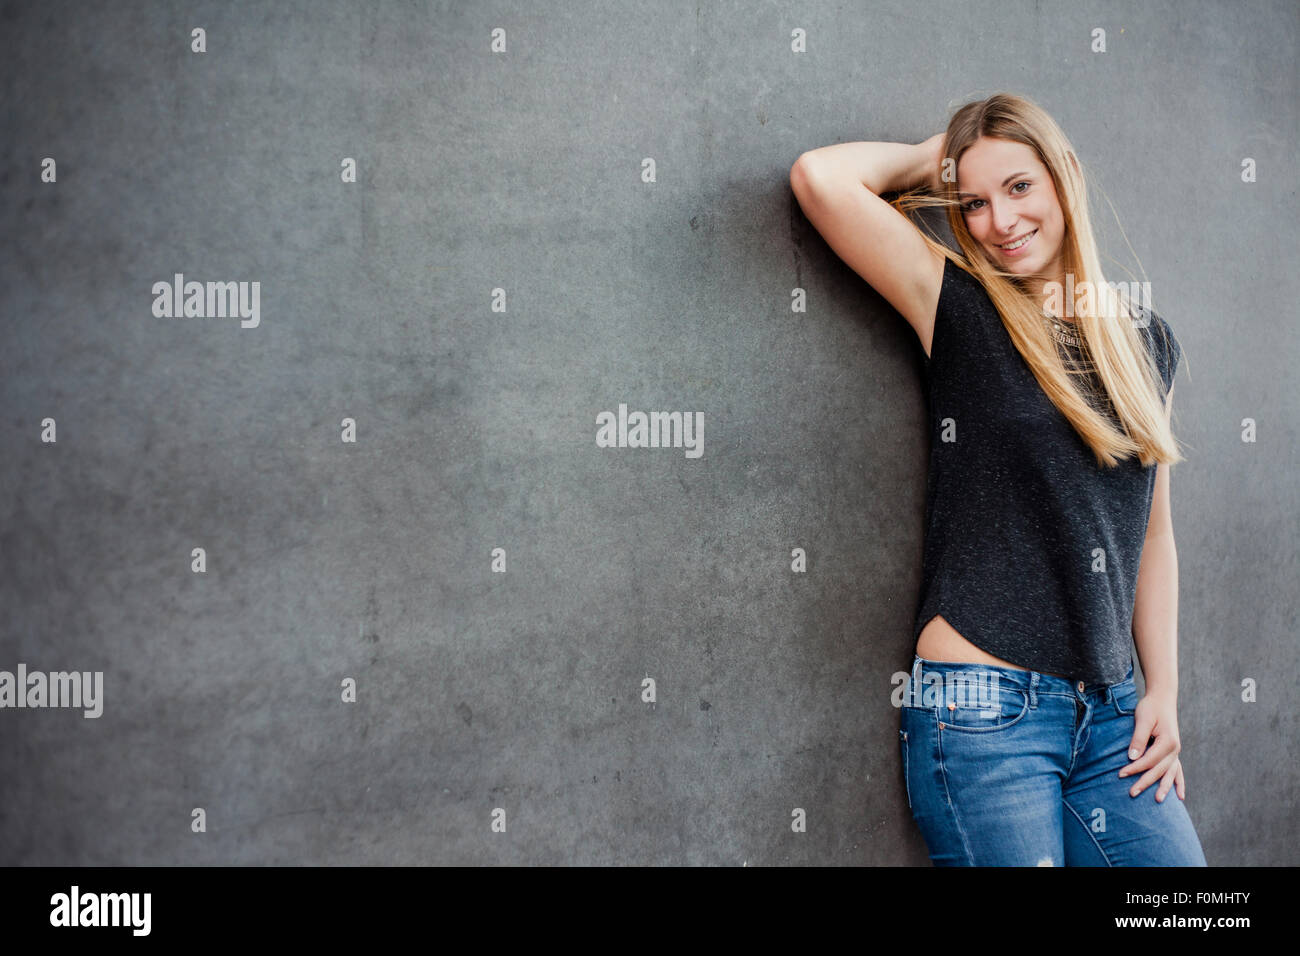 Belle adolescente en face de mur de béton Banque D'Images